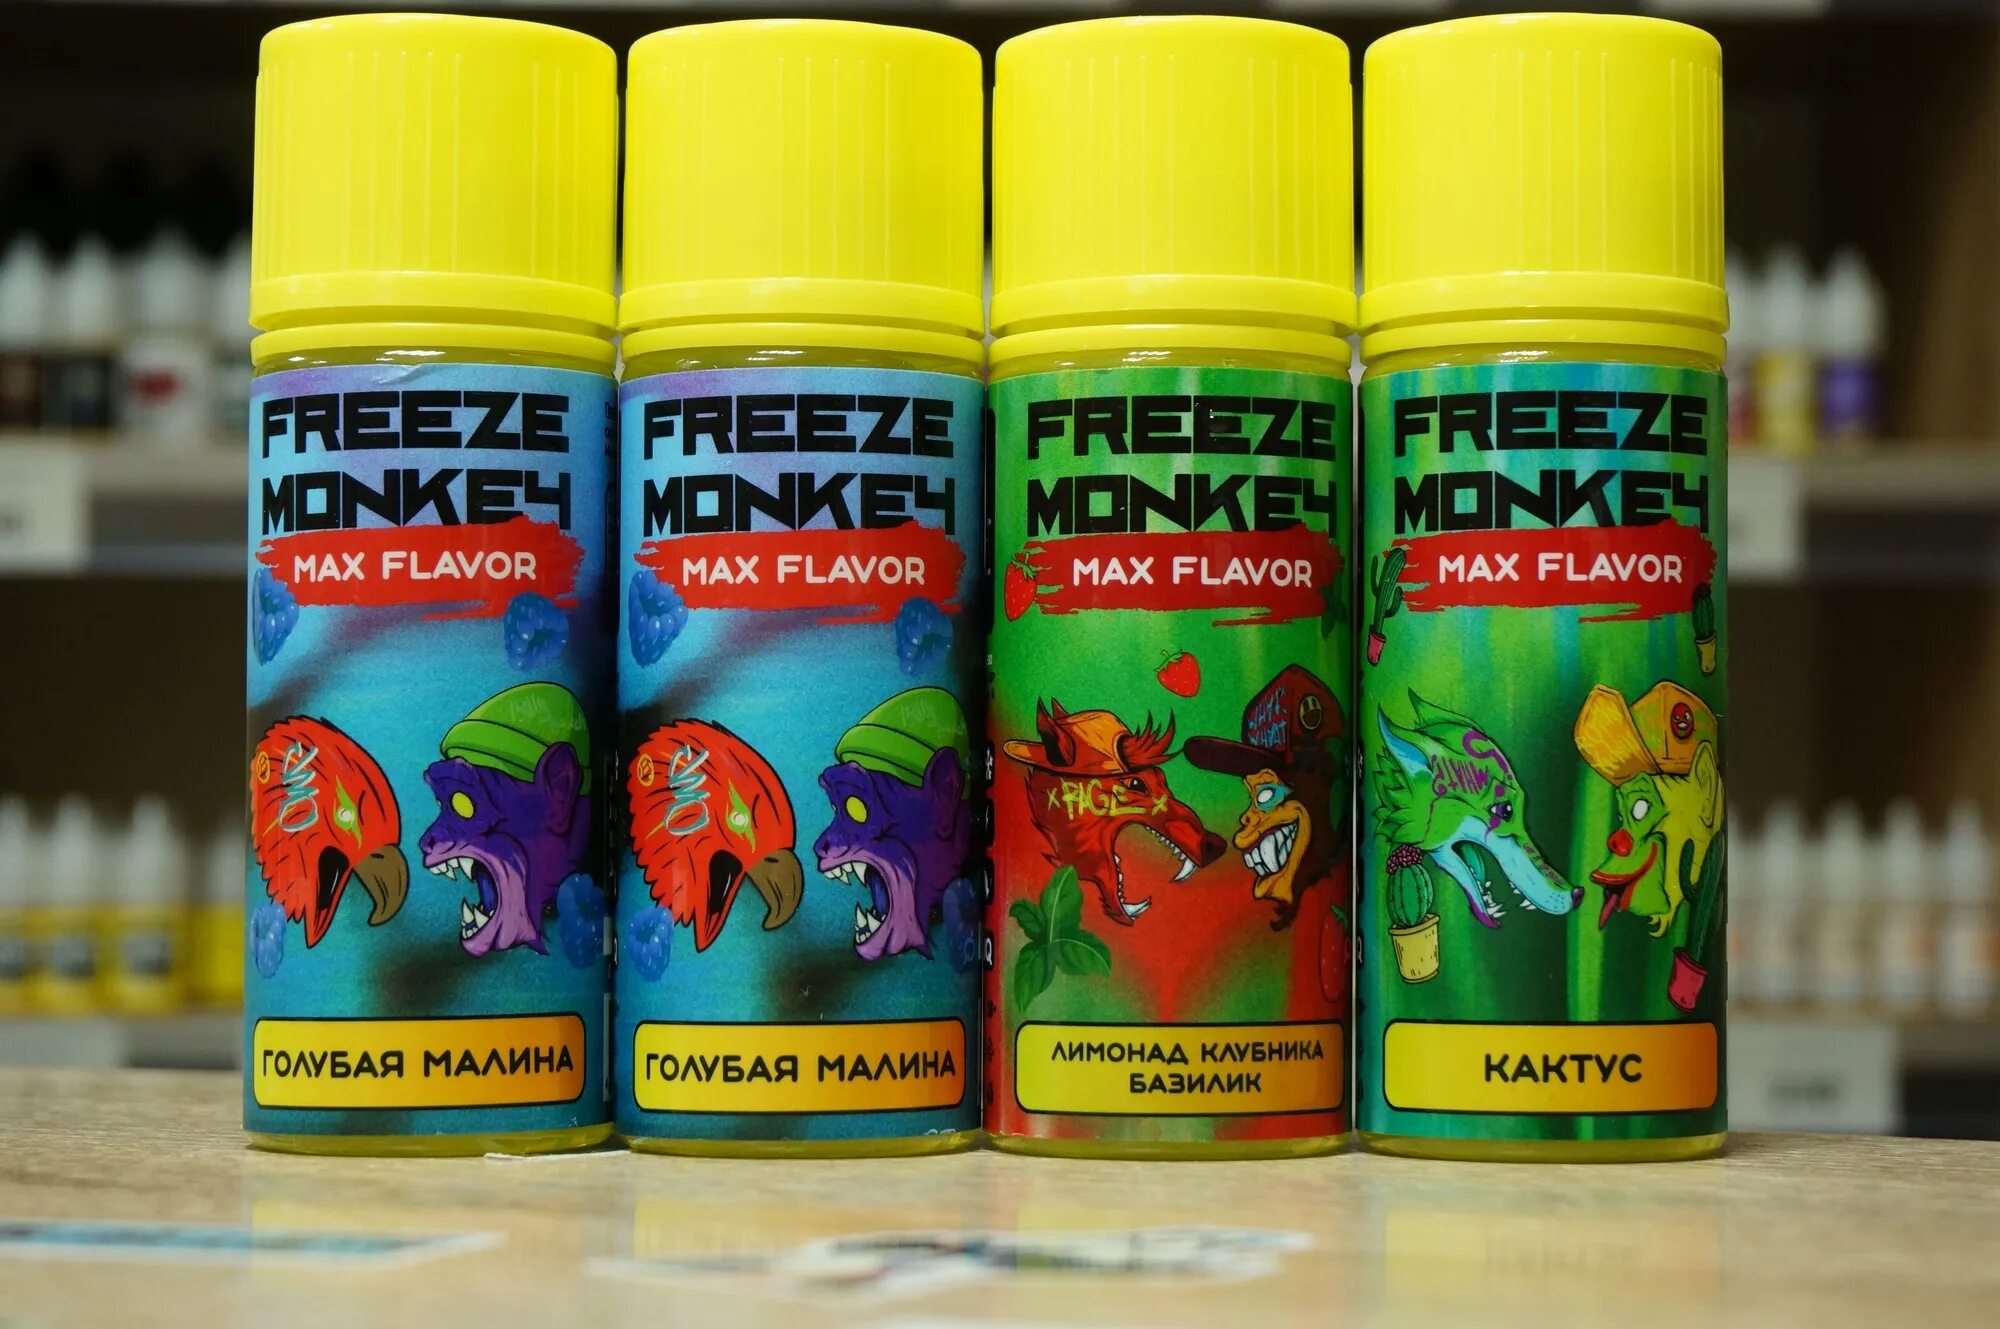 Freeze monkey. Жидкость Freeze Monkey Max flavor. Freeze Monkey Max flavor 120ml. Freeze Monkey Max flavor 120 мл. Max flavor жидкость.